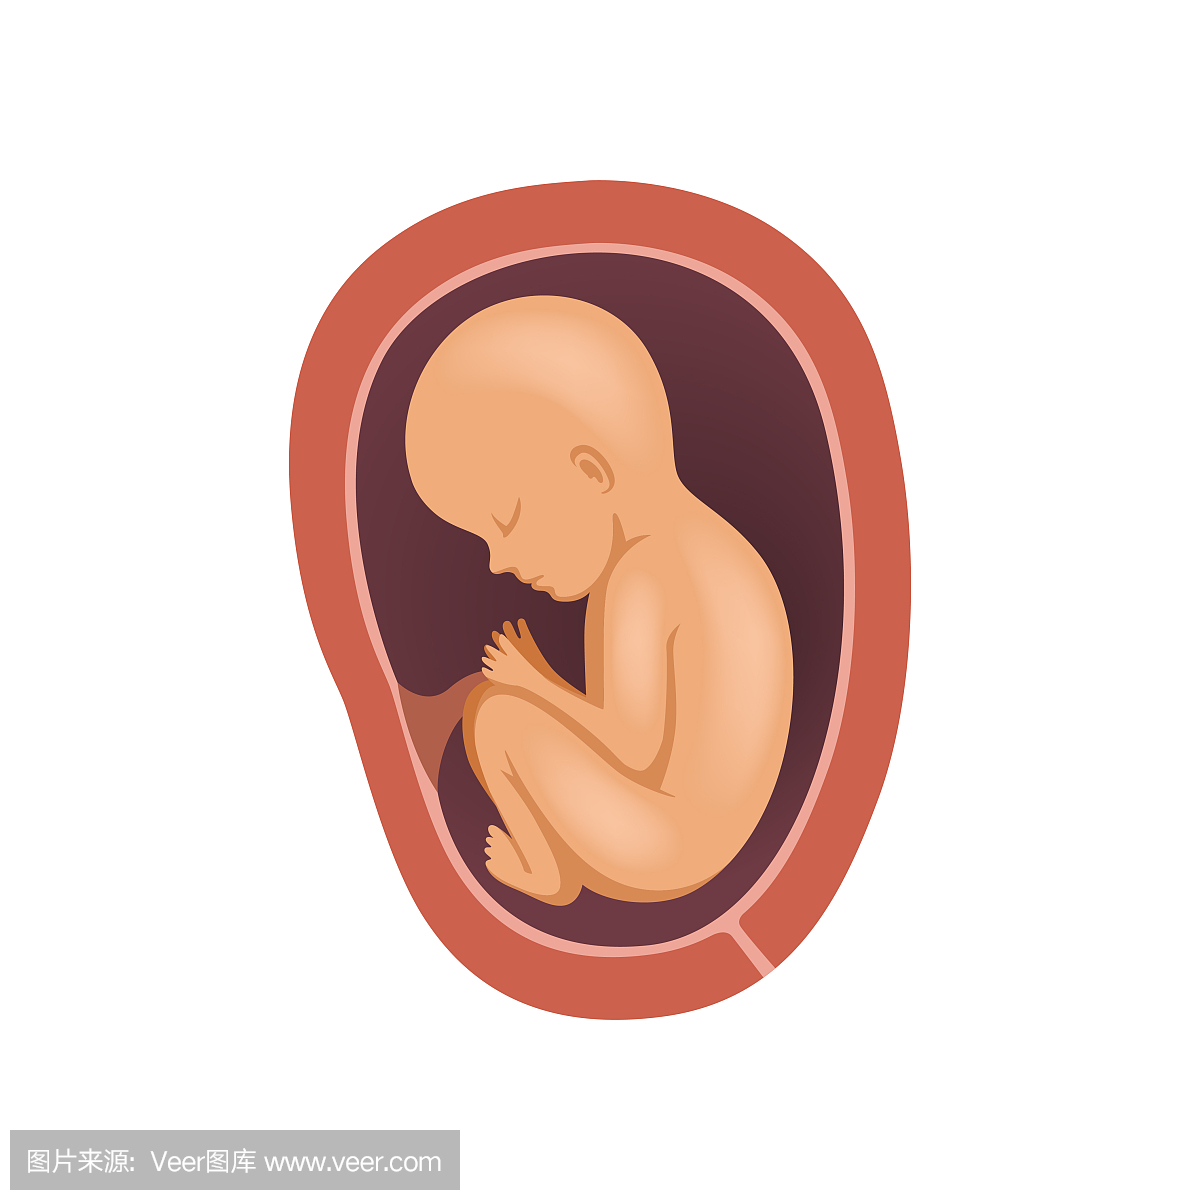 在子宫内的人类胎儿,8个月,胚胎发育阶段矢量